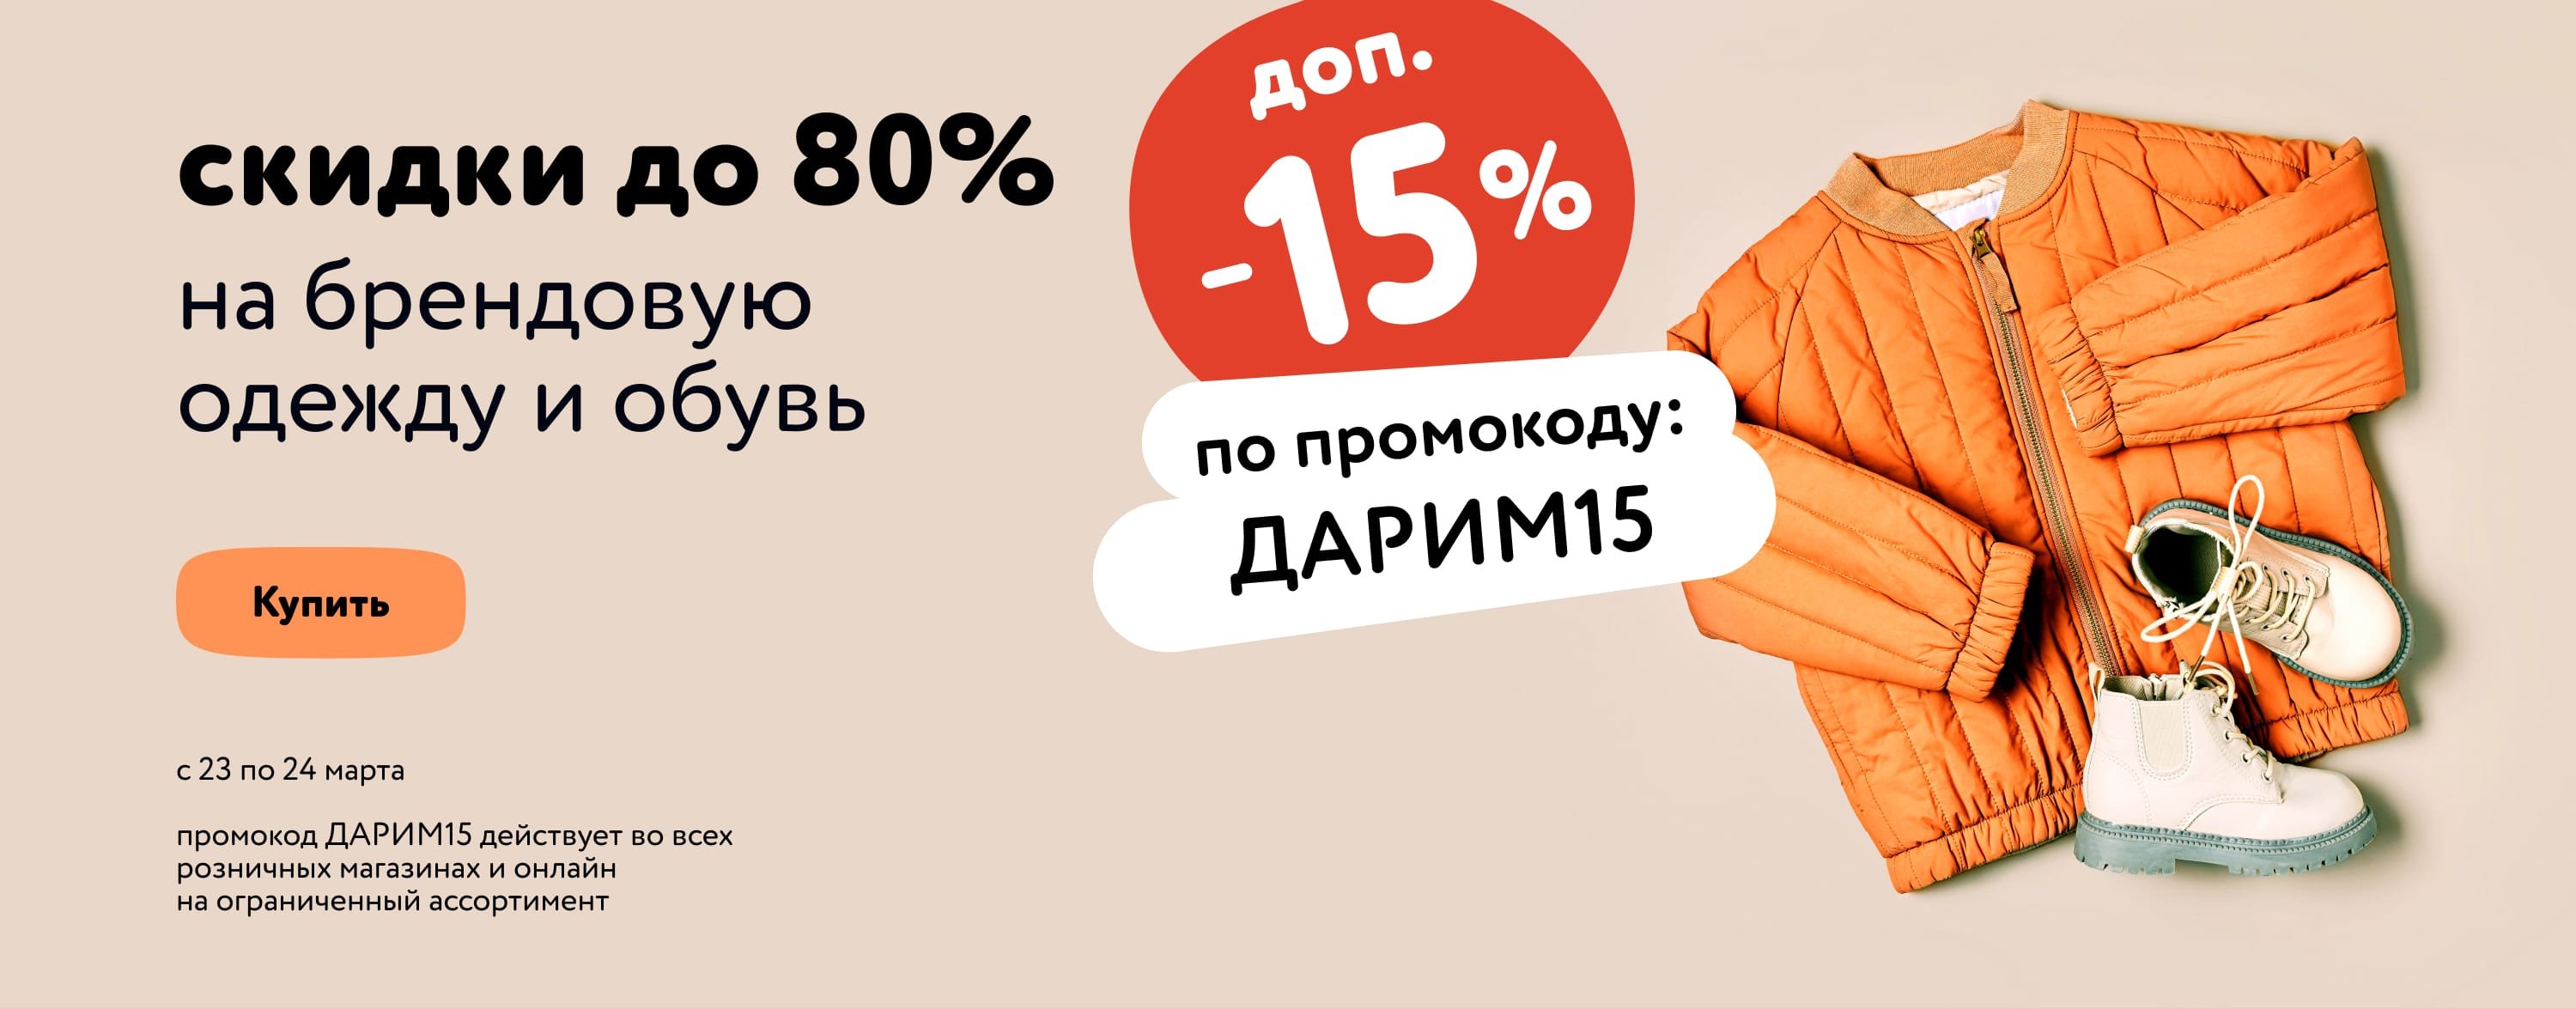 Доп. скидка 15% по промокоду на детскую и женскую одежду и обувь ДАРИМ15 карусэл